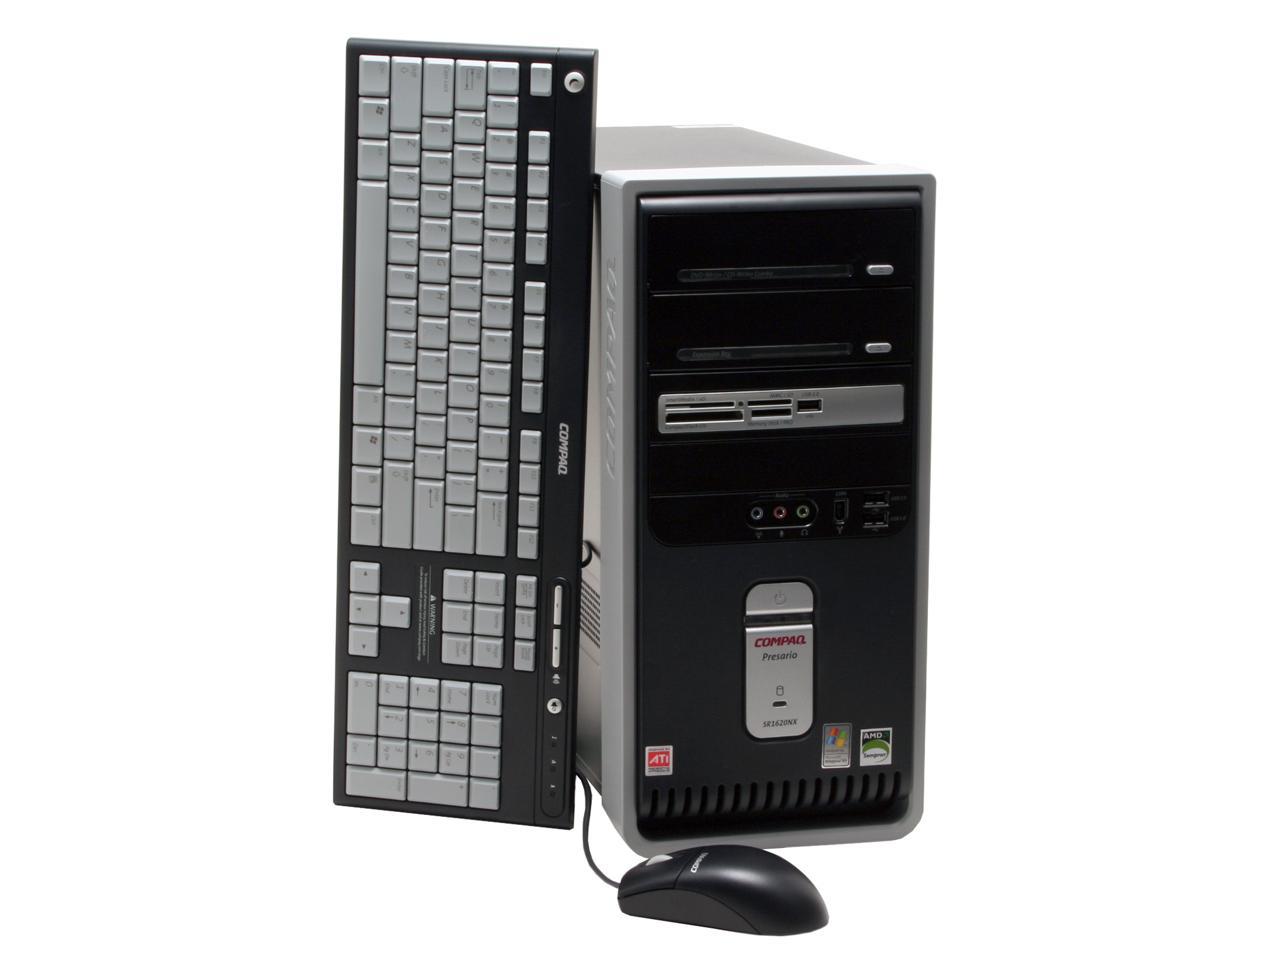 COMPAQ Desktop PC Presario SR1620NX (EG733A) Sempron 3400+ 512MB DDR 160GB  HDD Windows XP Home - Newegg.com